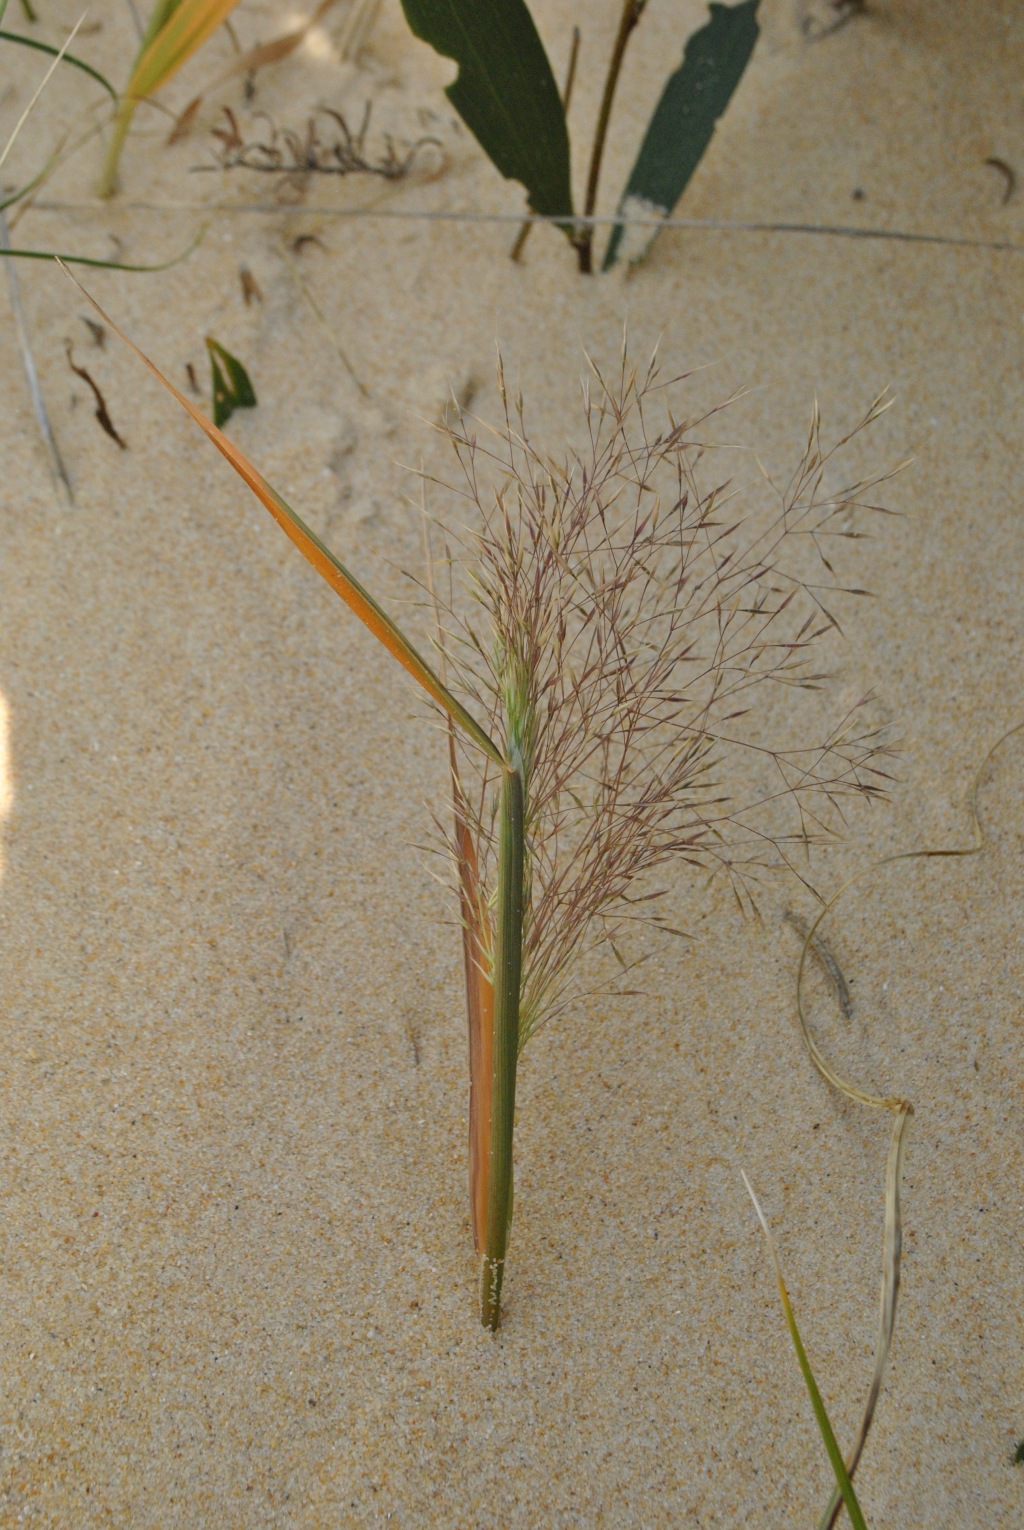 Lachnagrostis billardierei subsp. billardierei (hero image)